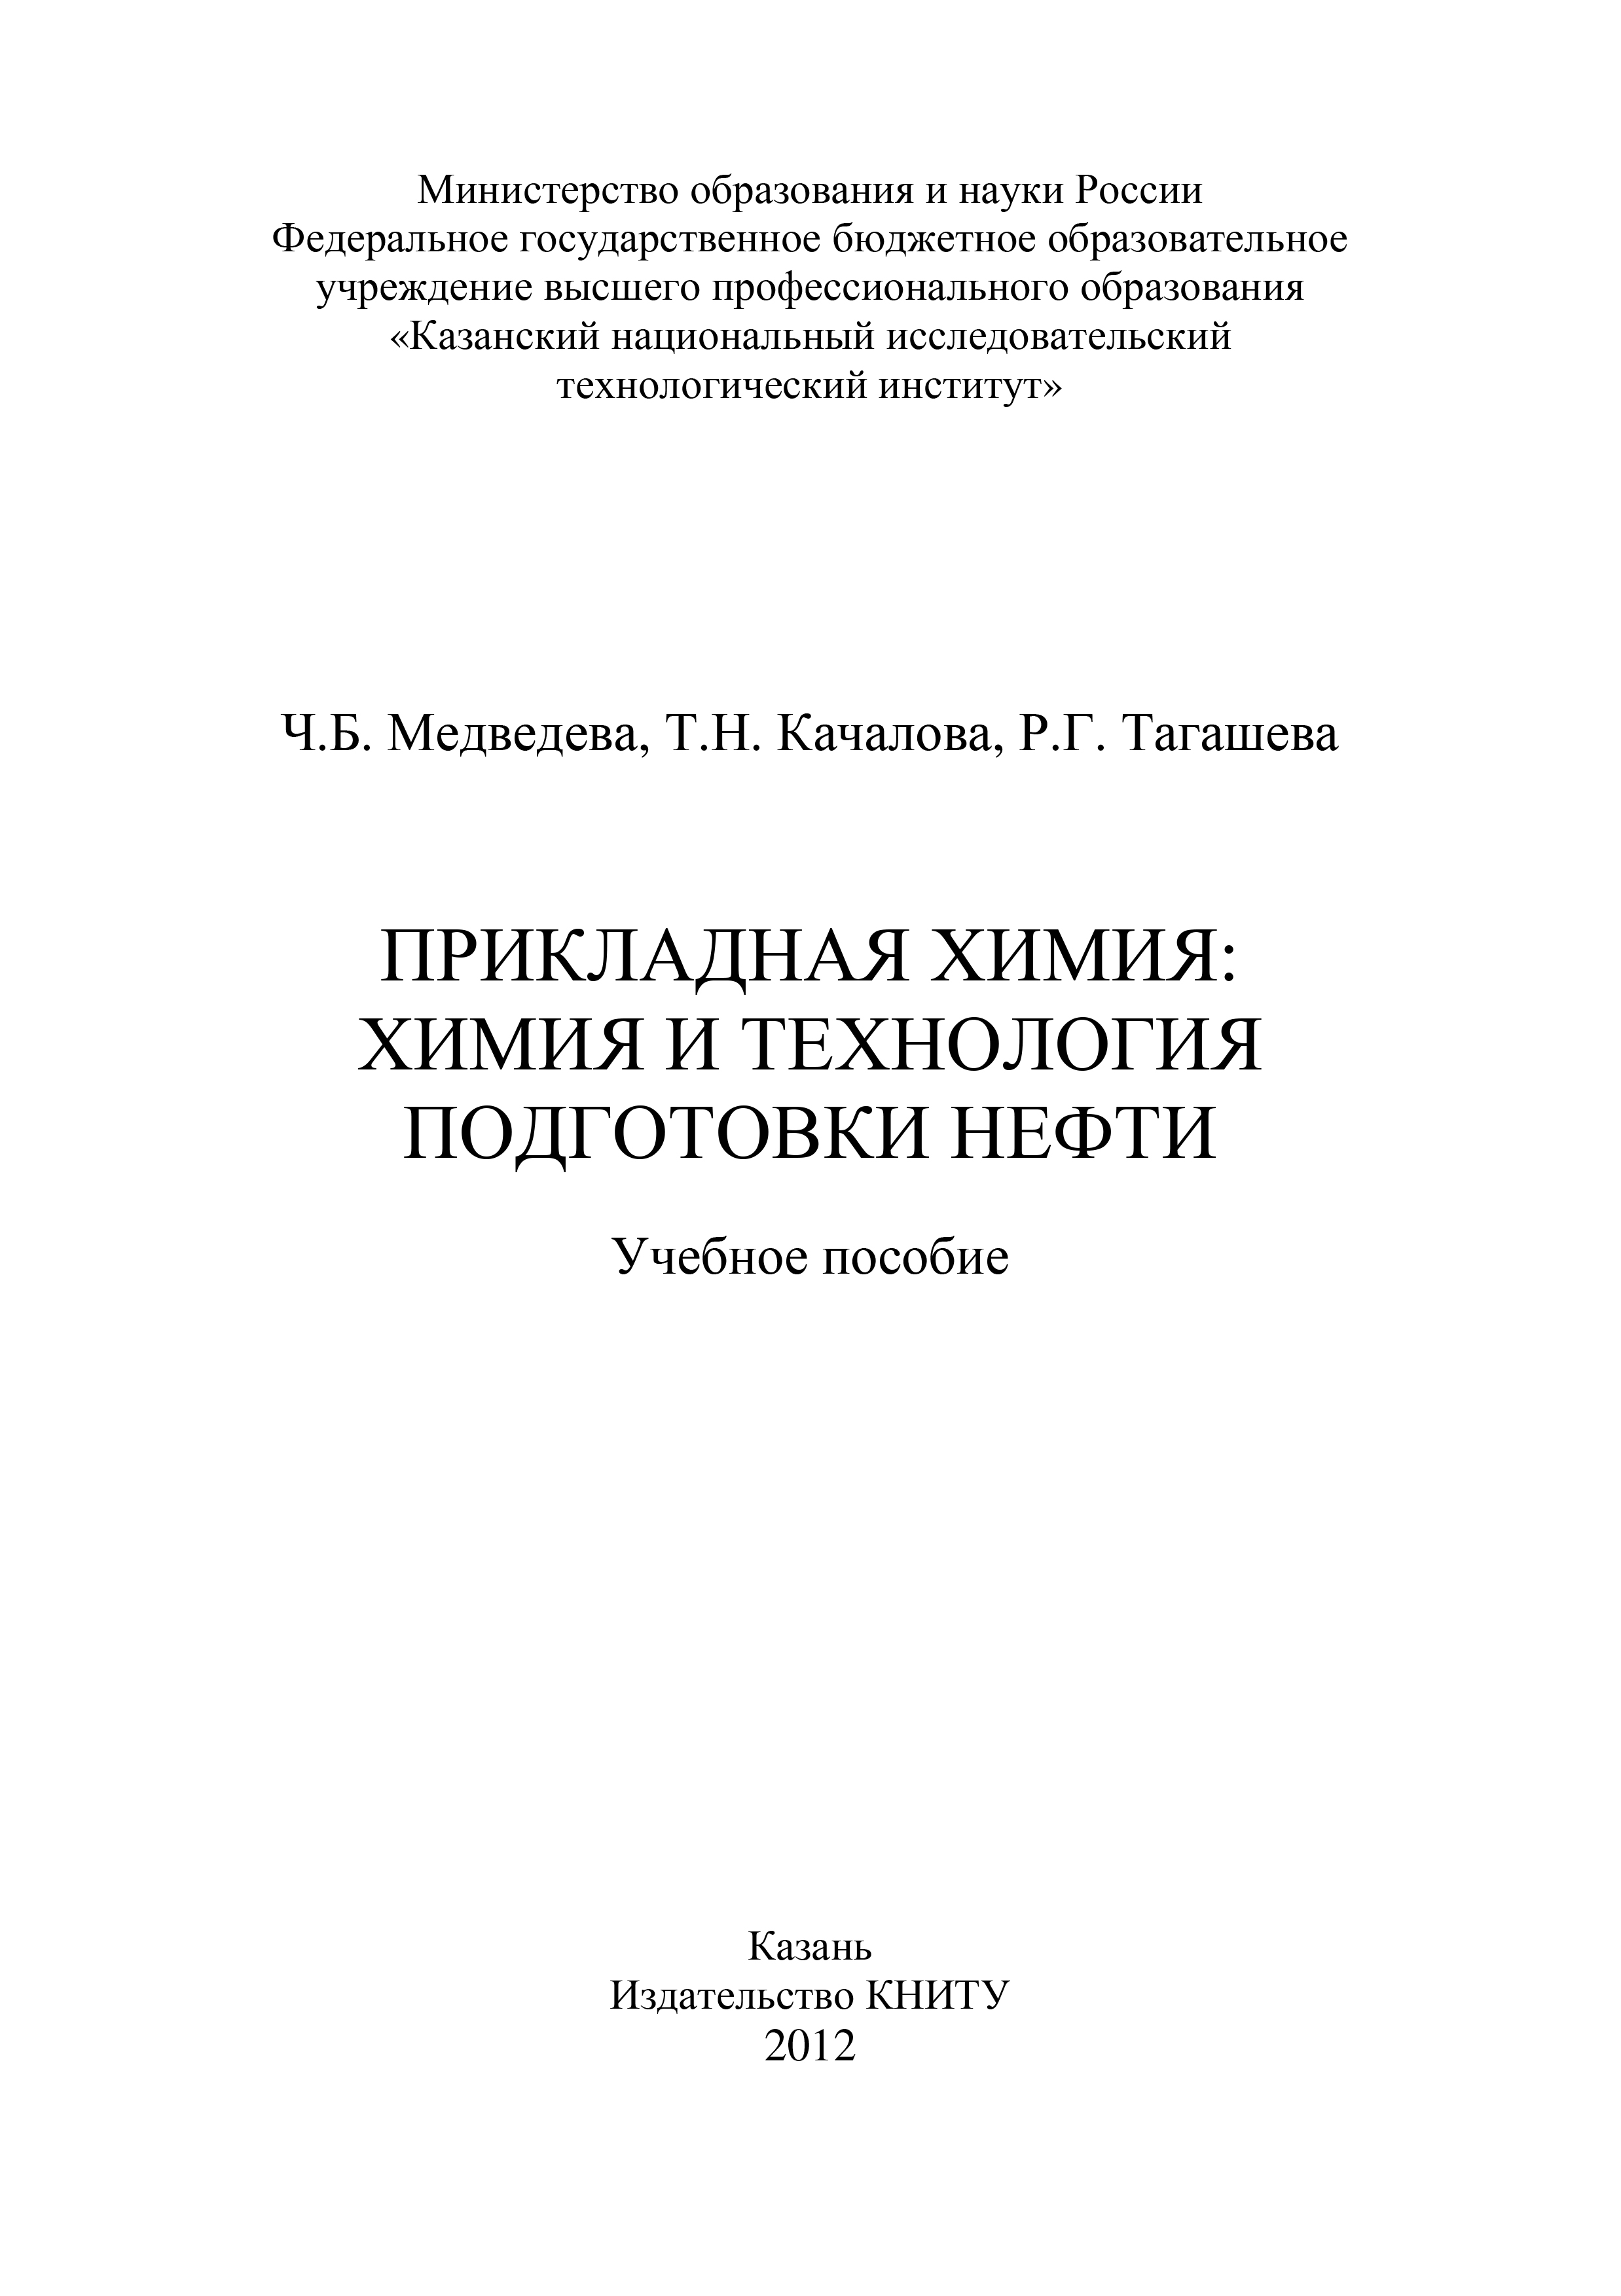 Т. Качалова Прикладная химия: химия и технология подготовки нефти